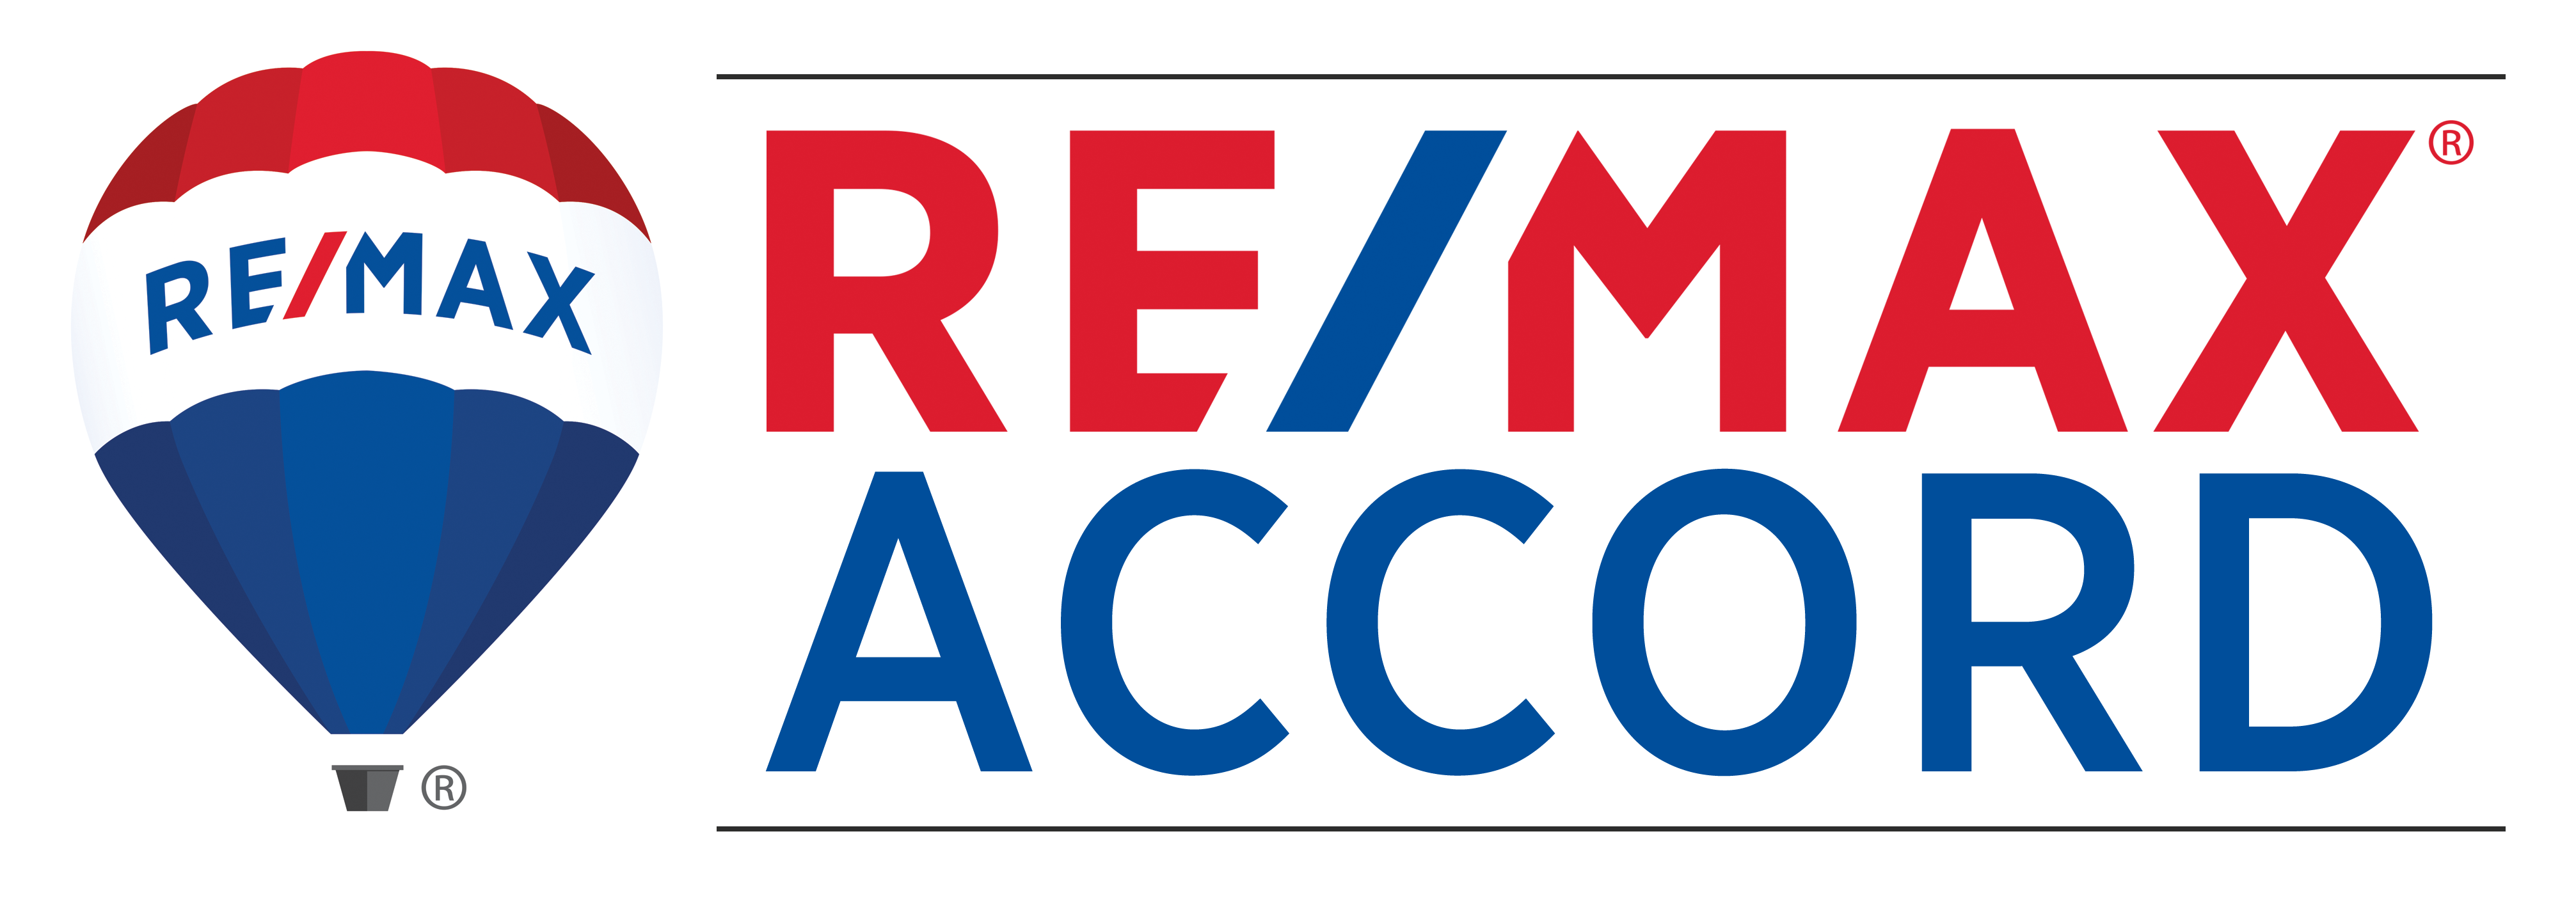 Remax Accord | License #01243003